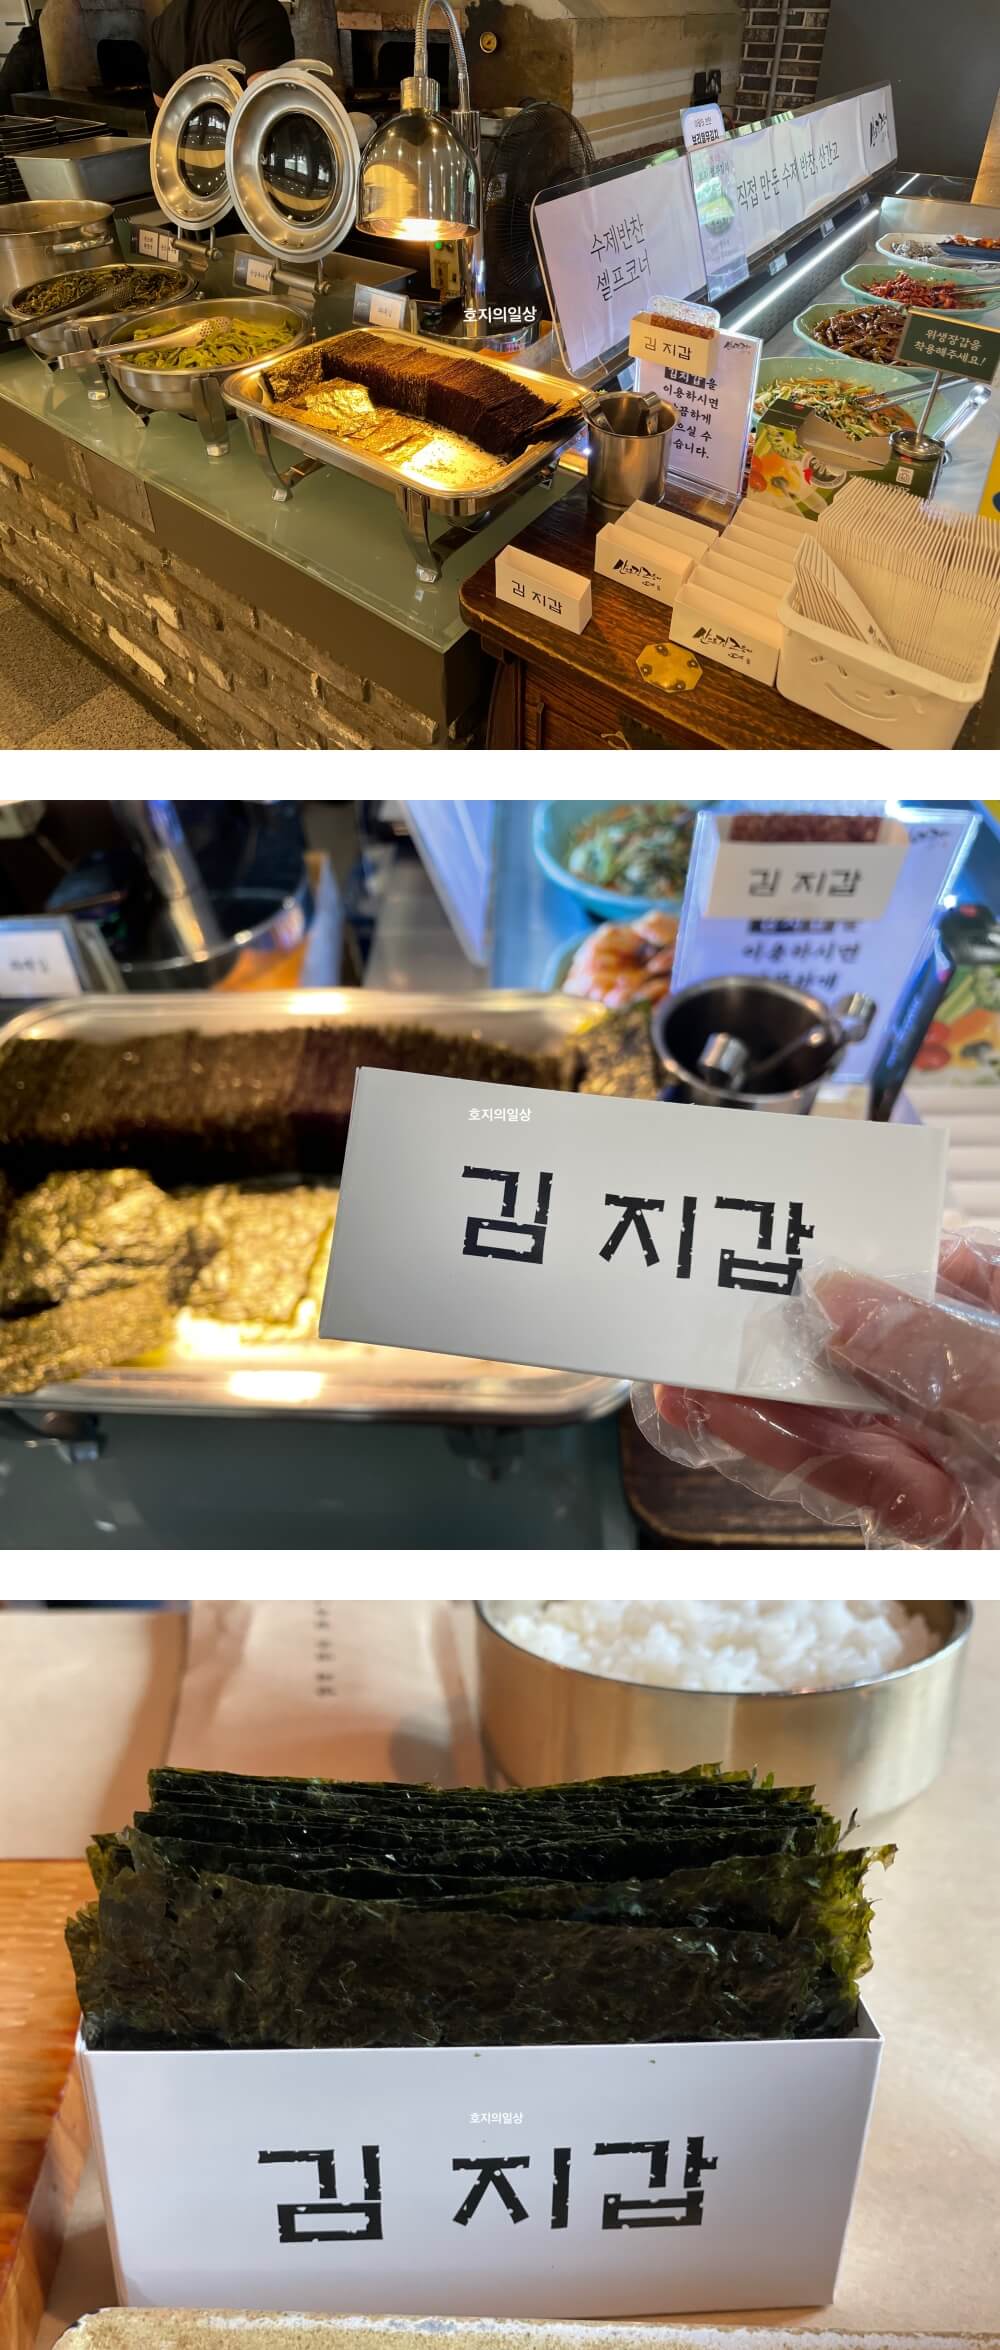 용인 고기리 구이 맛집 산으로간고등어 - 갓구운 리필 김